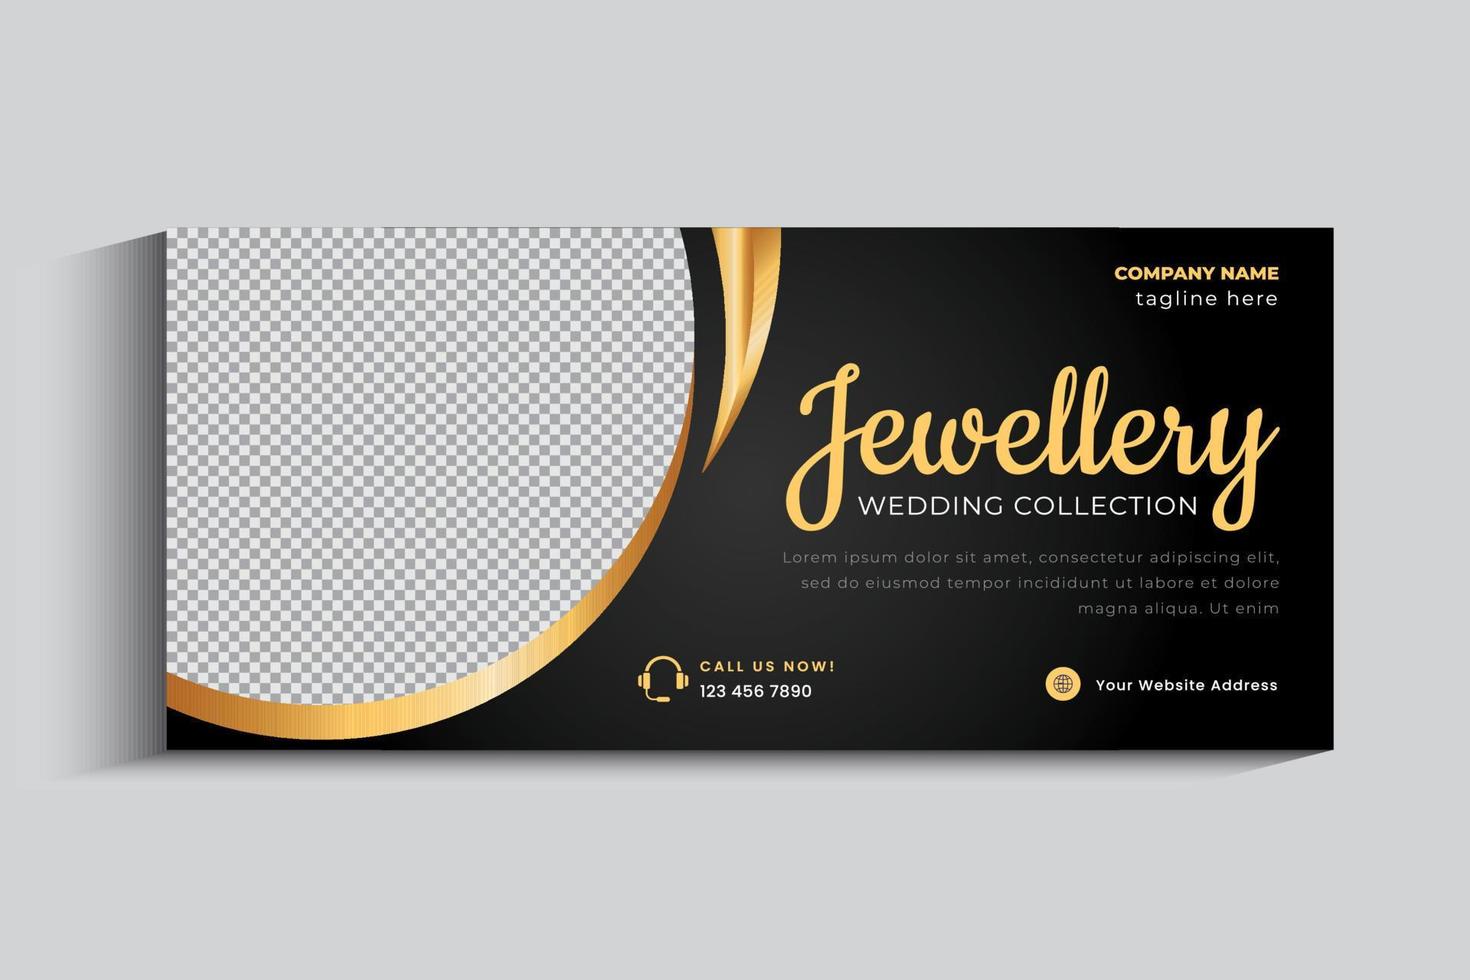 plantilla de diseño de banner de portada de negocio de joyería. adorno de oro publicación en redes sociales vector